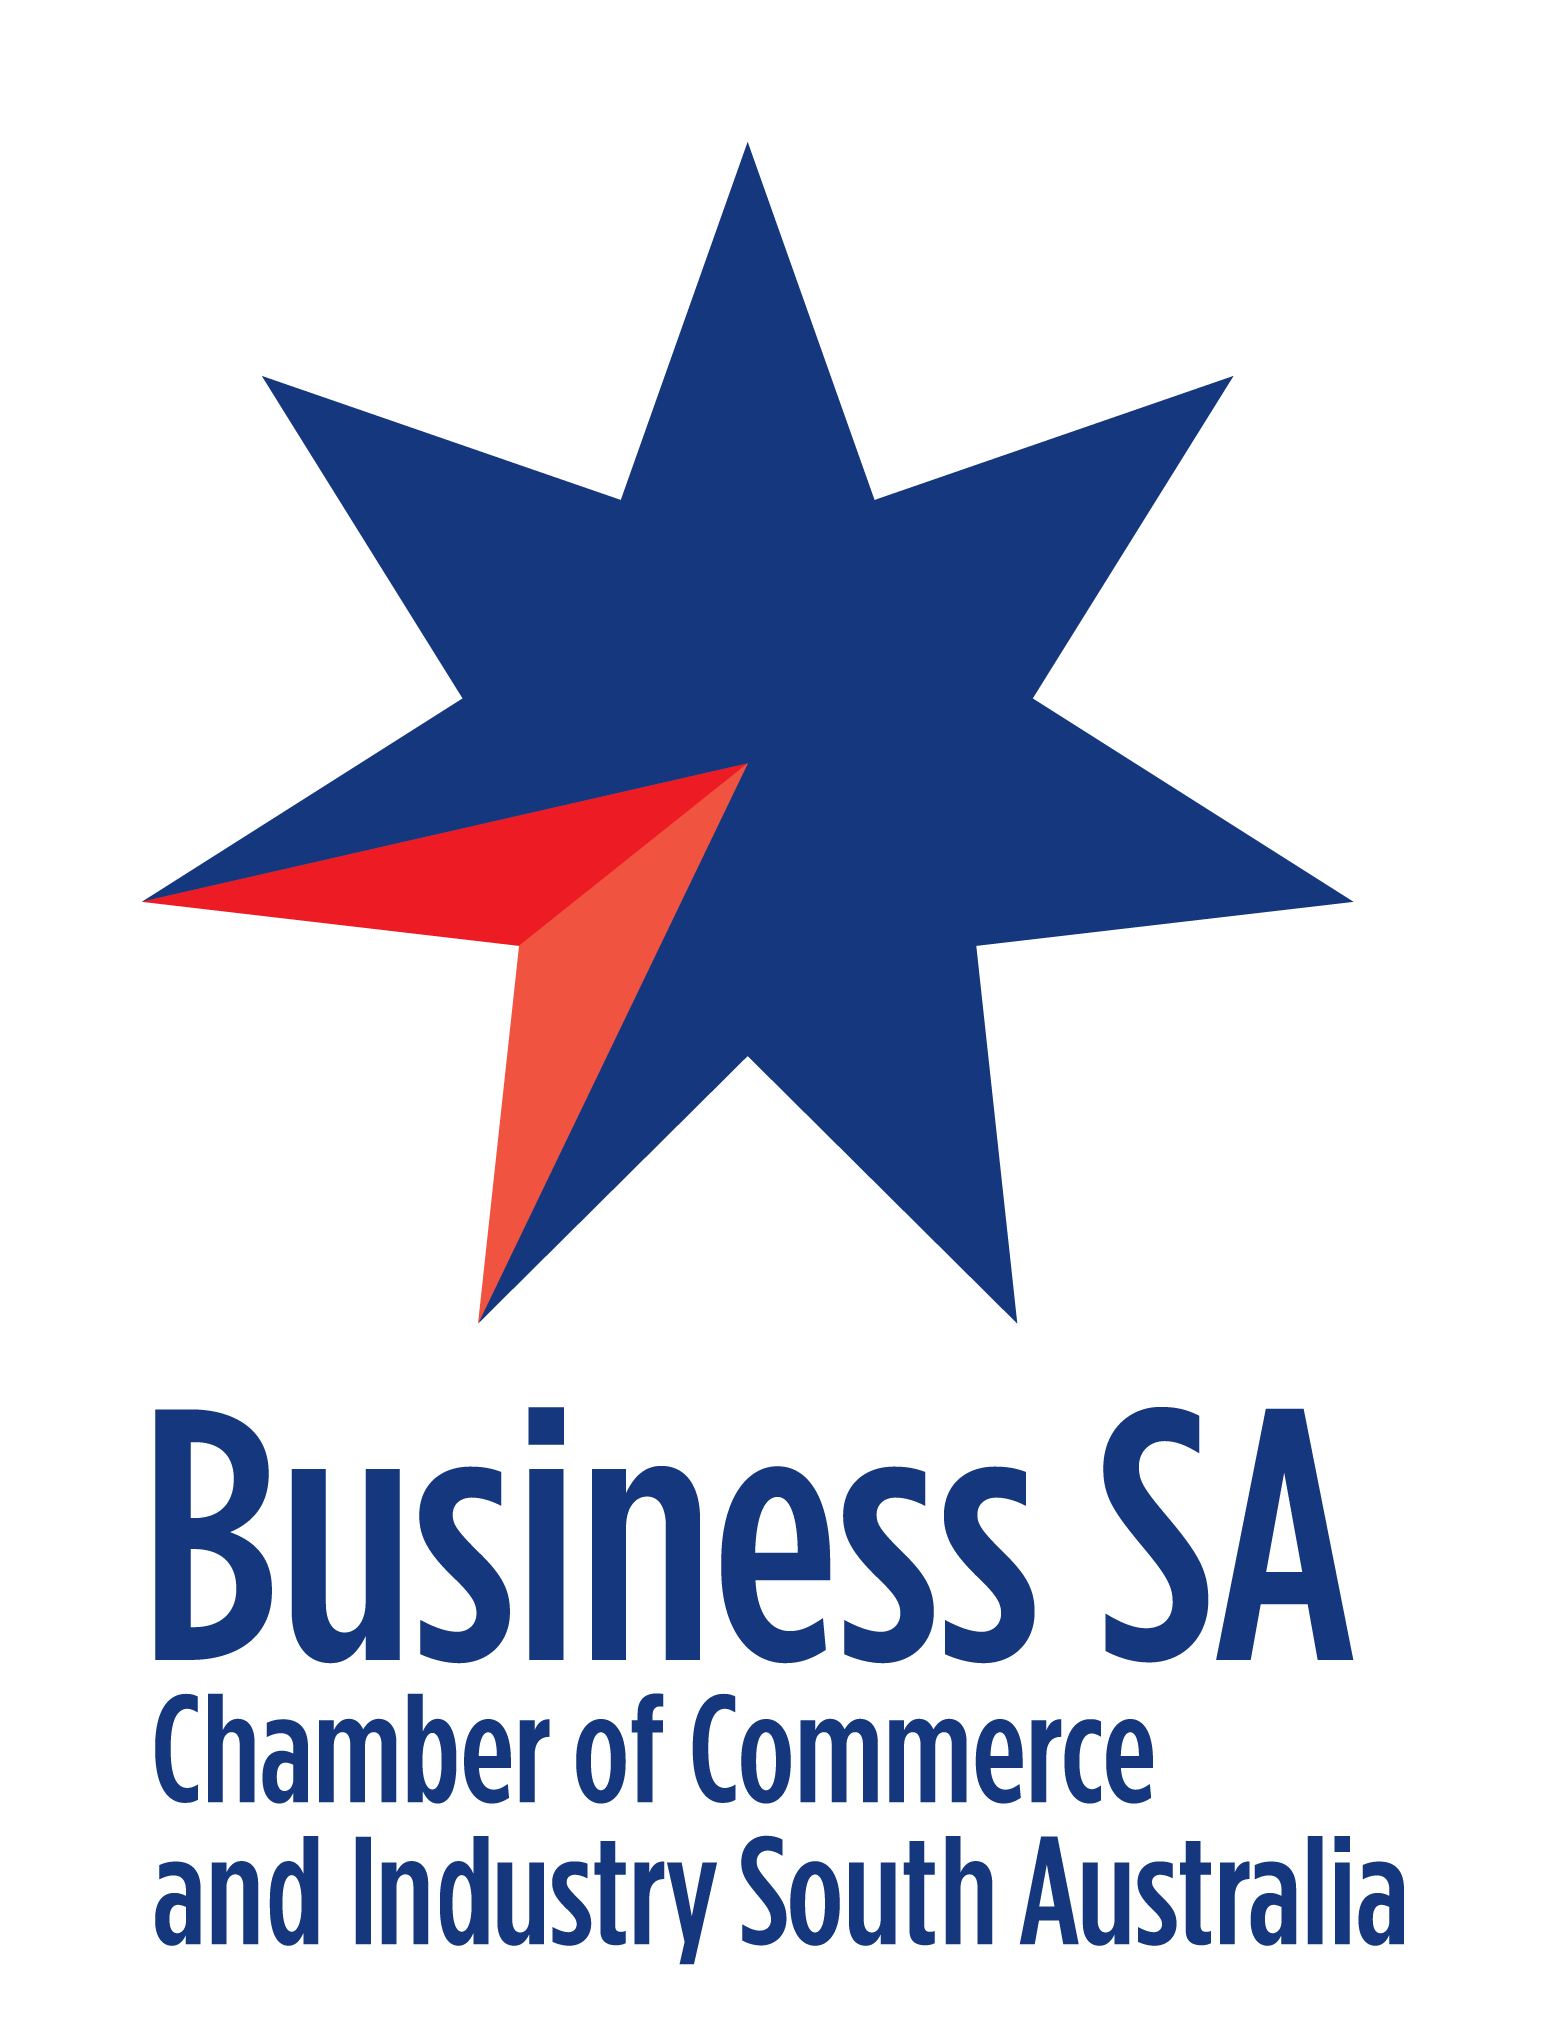 Business SA logo